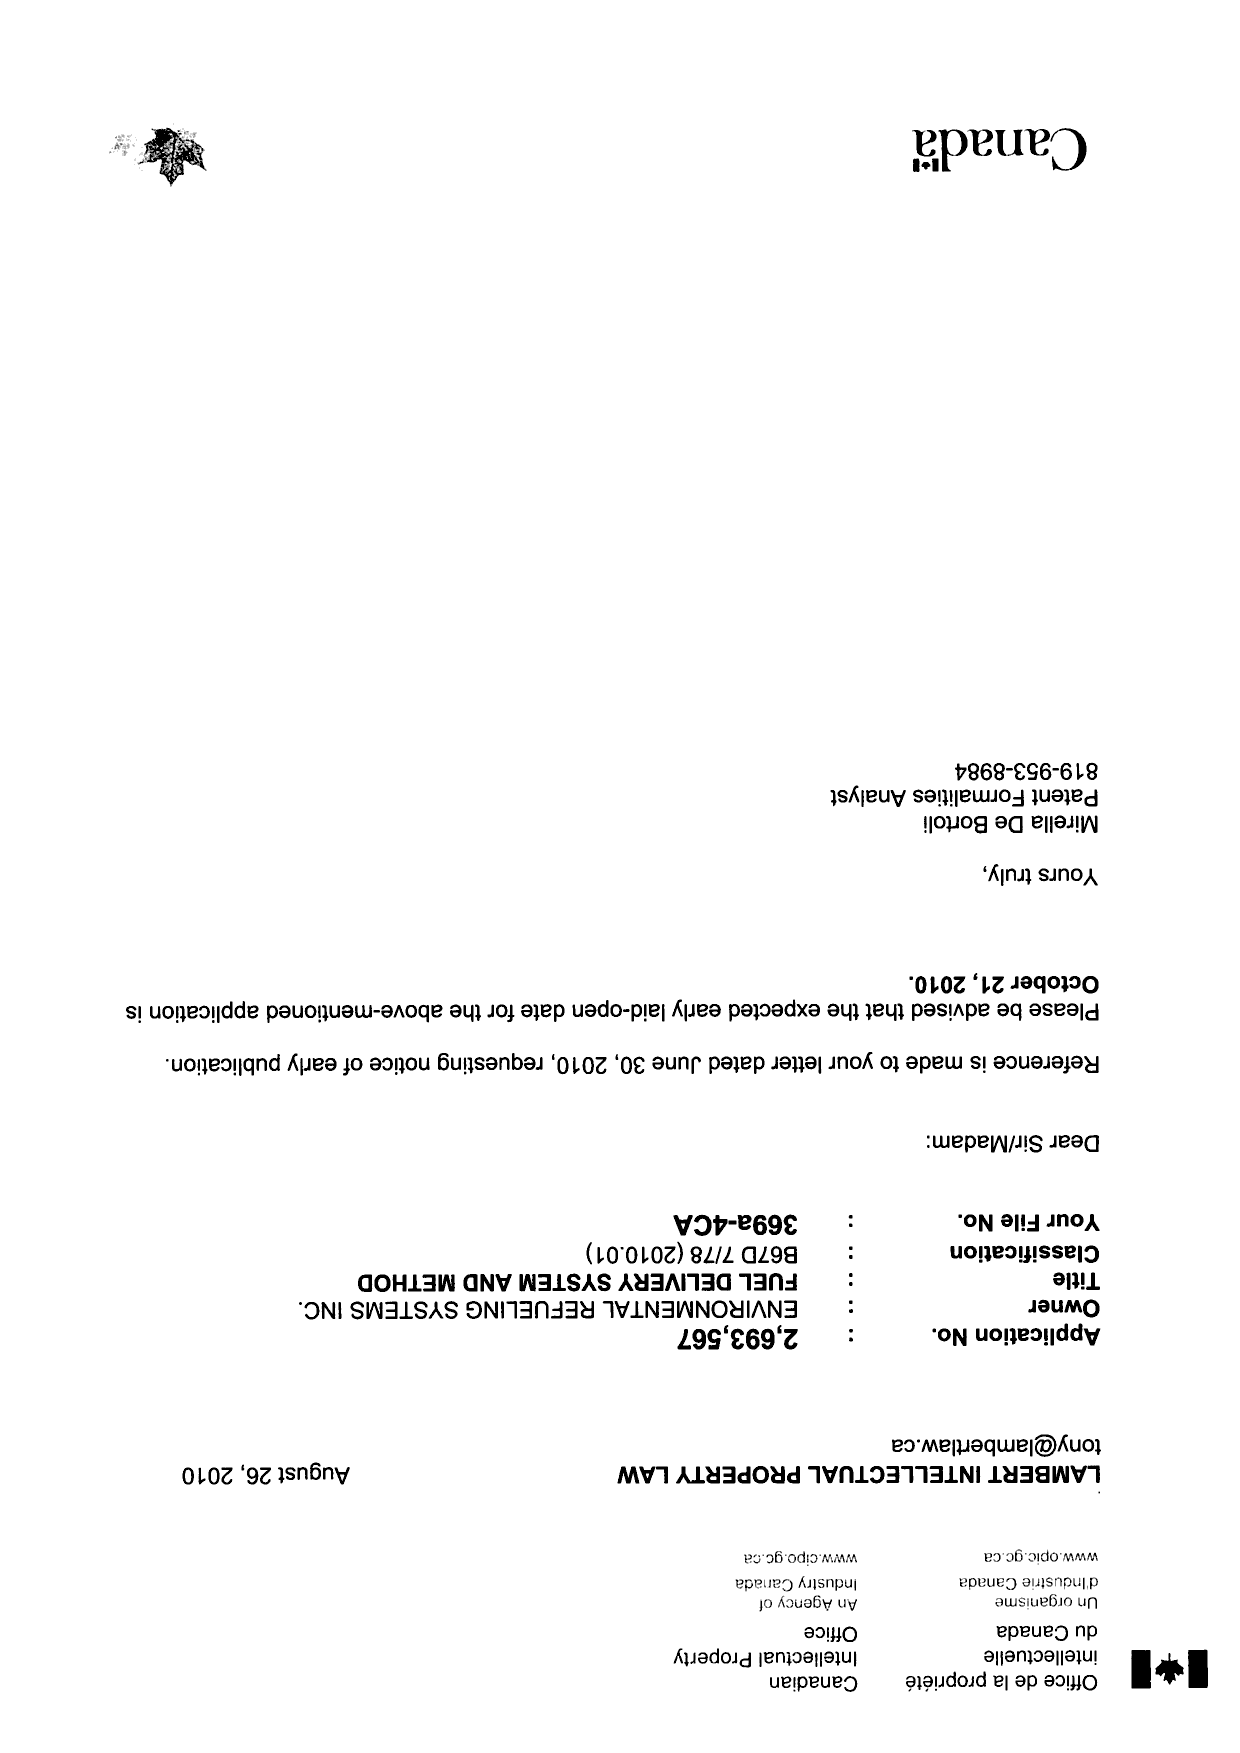 Document de brevet canadien 2693567. Correspondance 20091226. Image 1 de 1